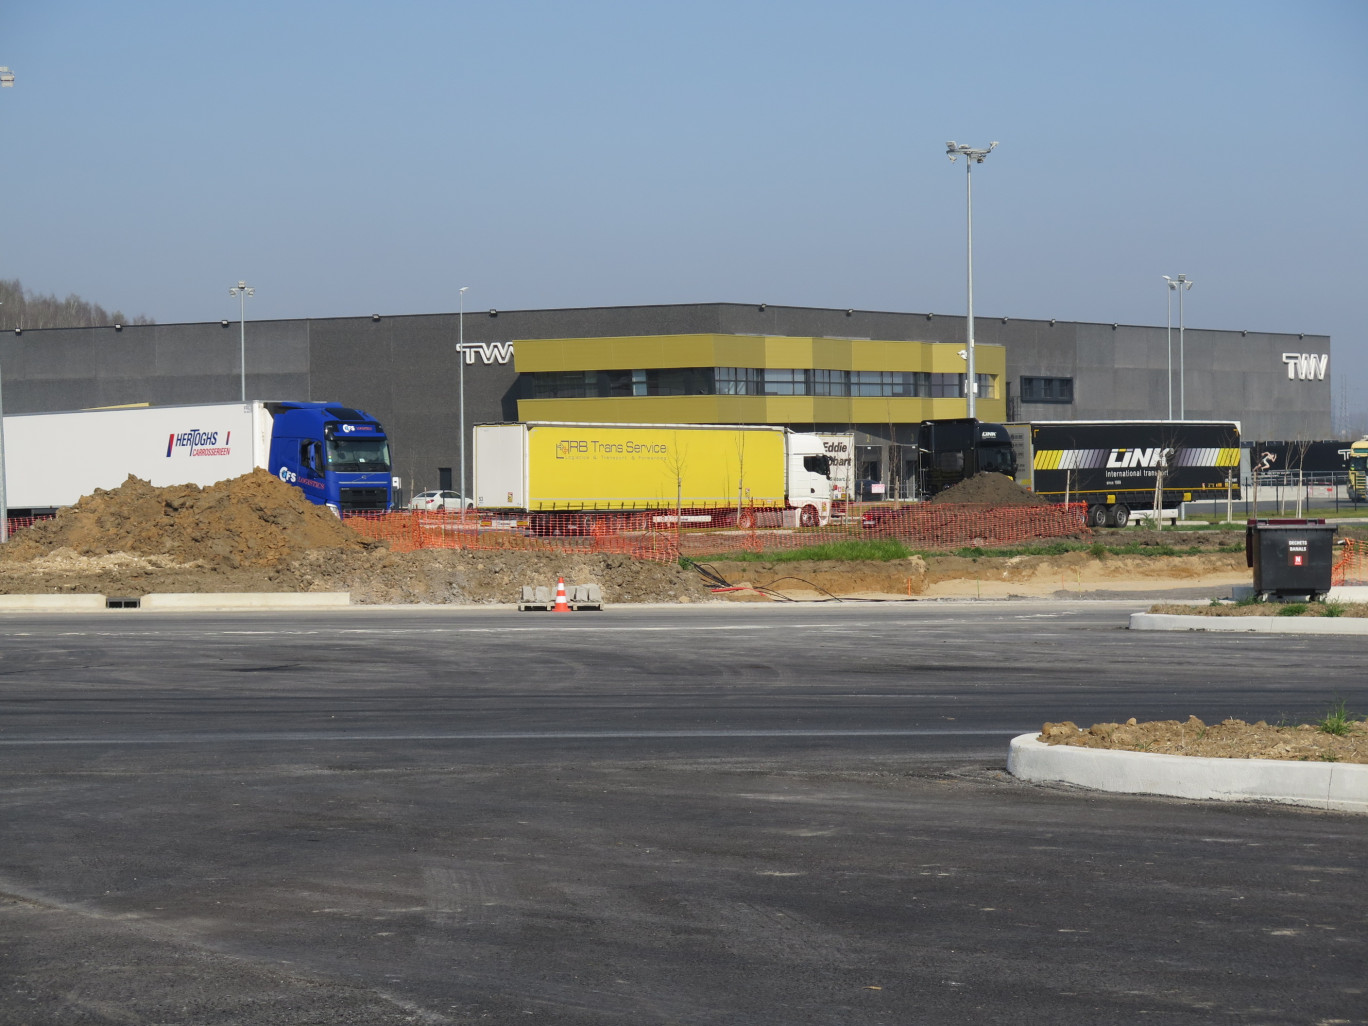 La deuxième phase des travaux représente 7 millions d'euros à TWV. A terme, ce sera 200 camions par jour. © Aletheia Press/B. Dequevauviller